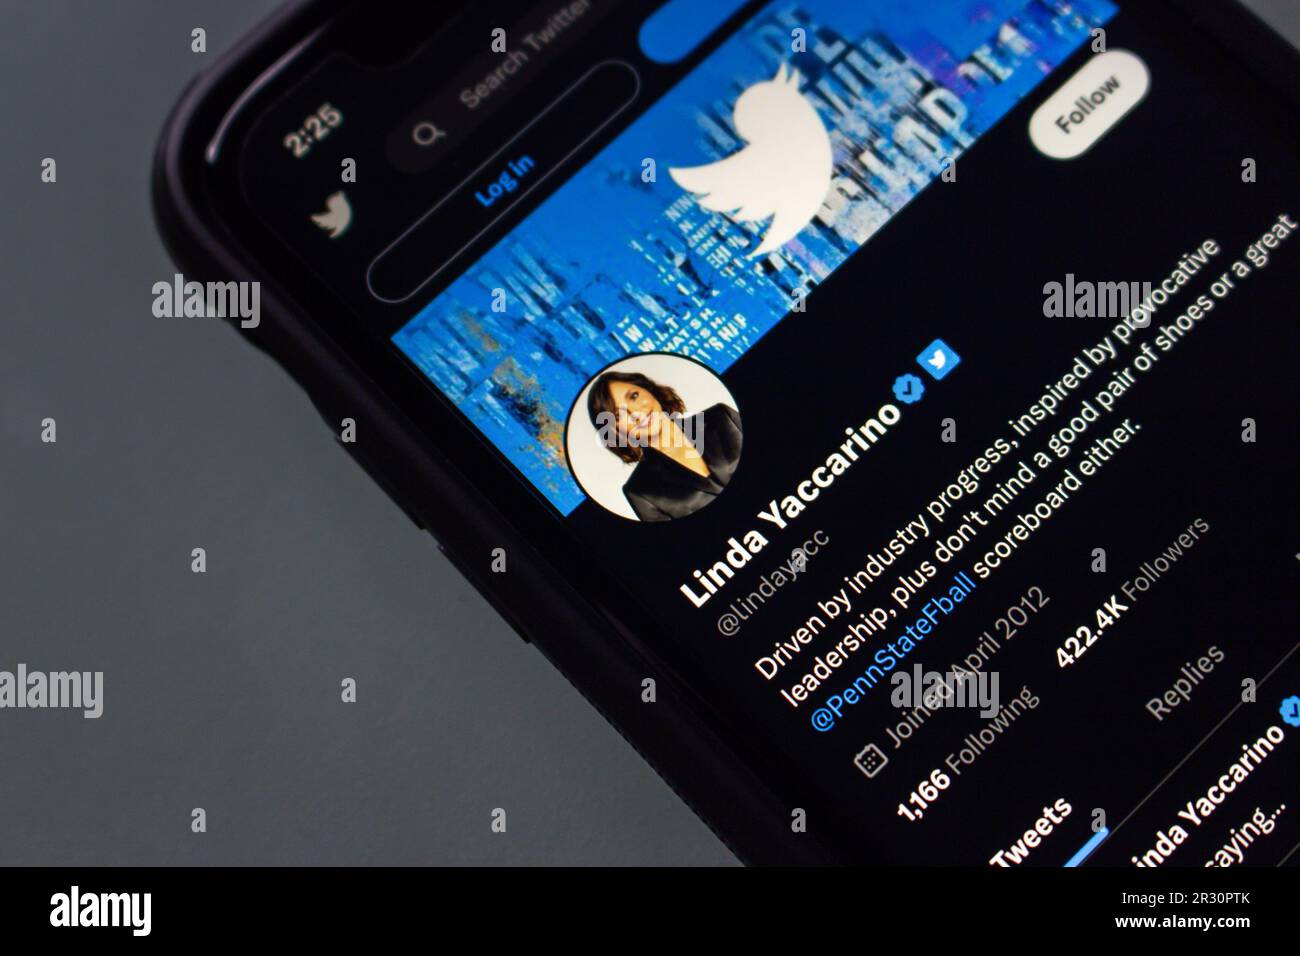 Linda Yaccarino account Twitter visto in uno schermo di iPhone. Il 12 maggio, Elon Musk ha annunciato che avrebbe succedato a lui come CEO di X Corp. E Twitter Foto Stock